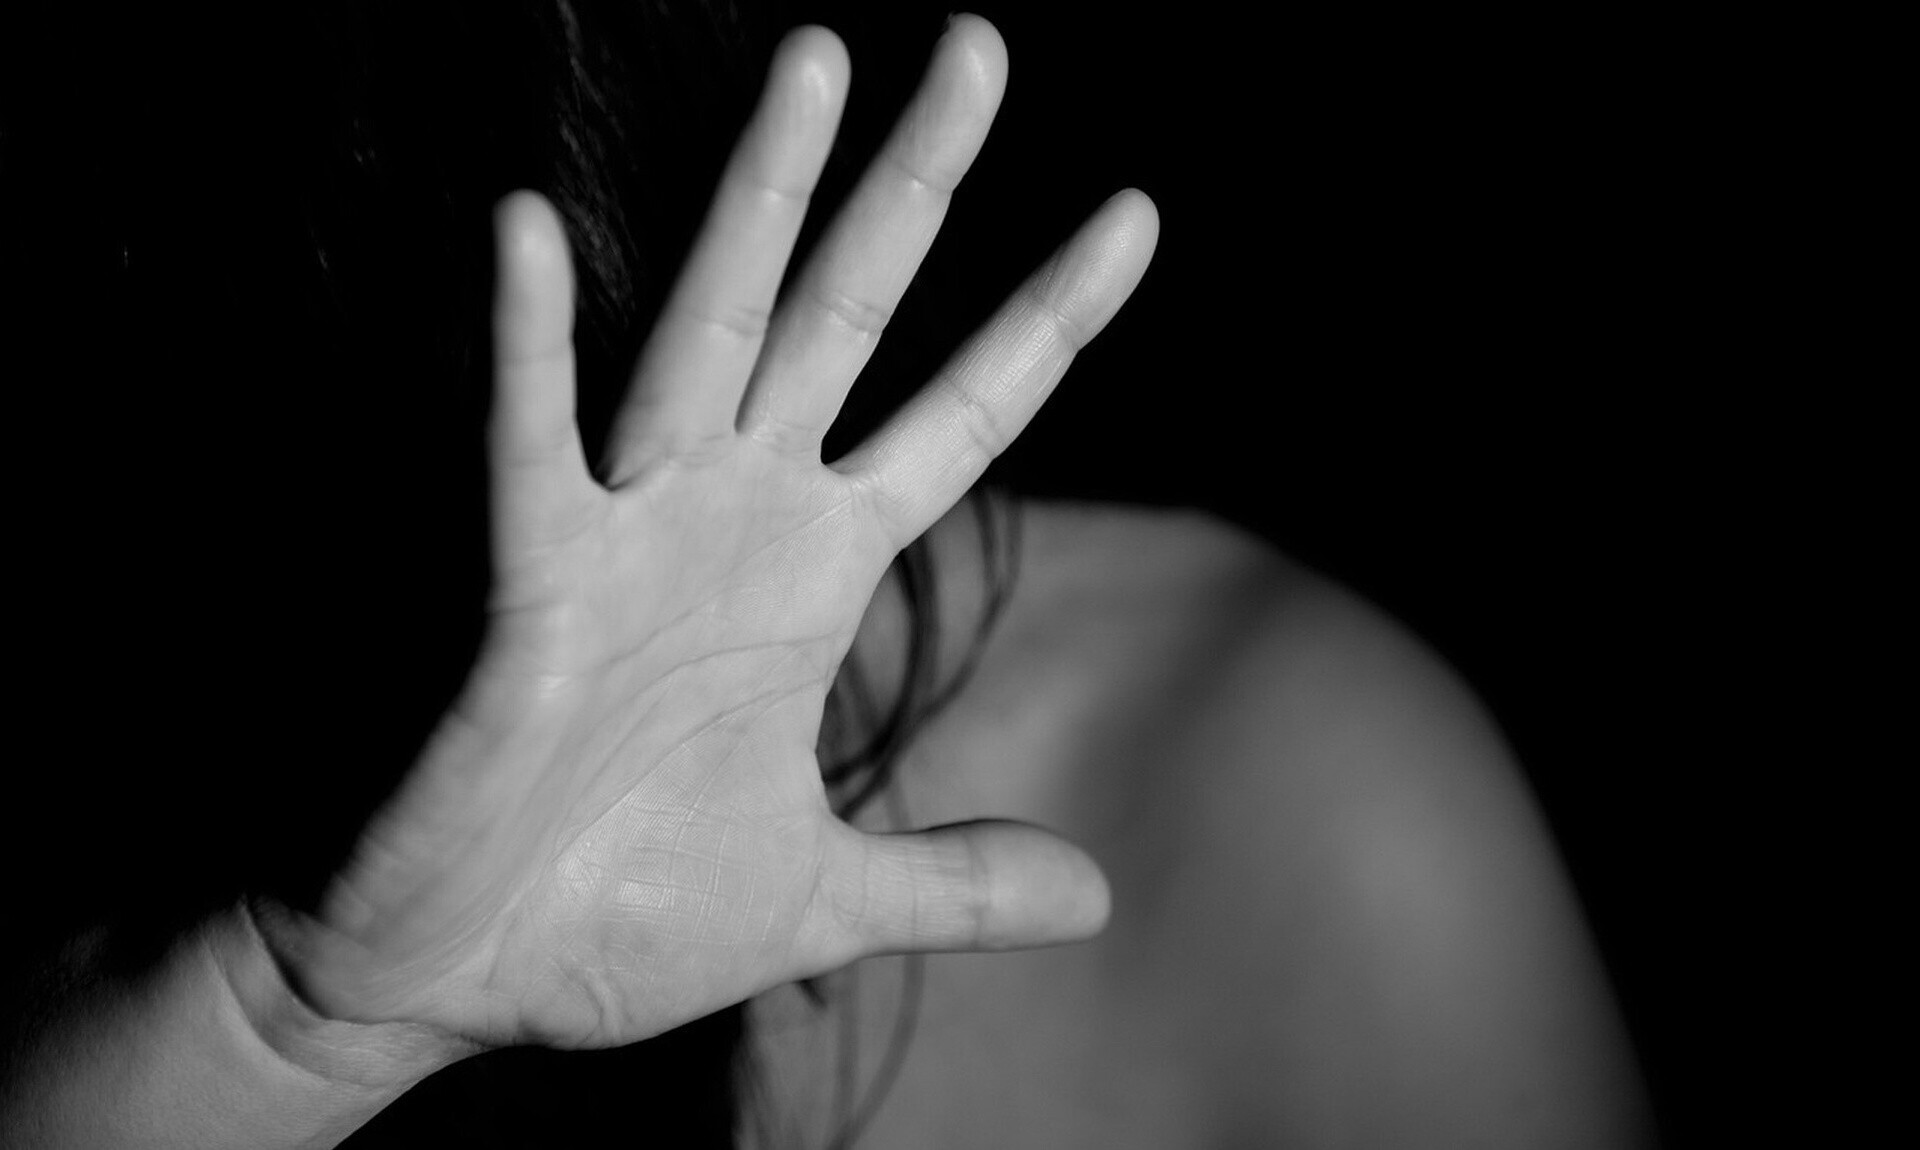 Μαγνησία: Μεθυσμένος σύζυγος ξυλοκόπησε τη γυναίκα του και την απείλησε με καραμπίνα